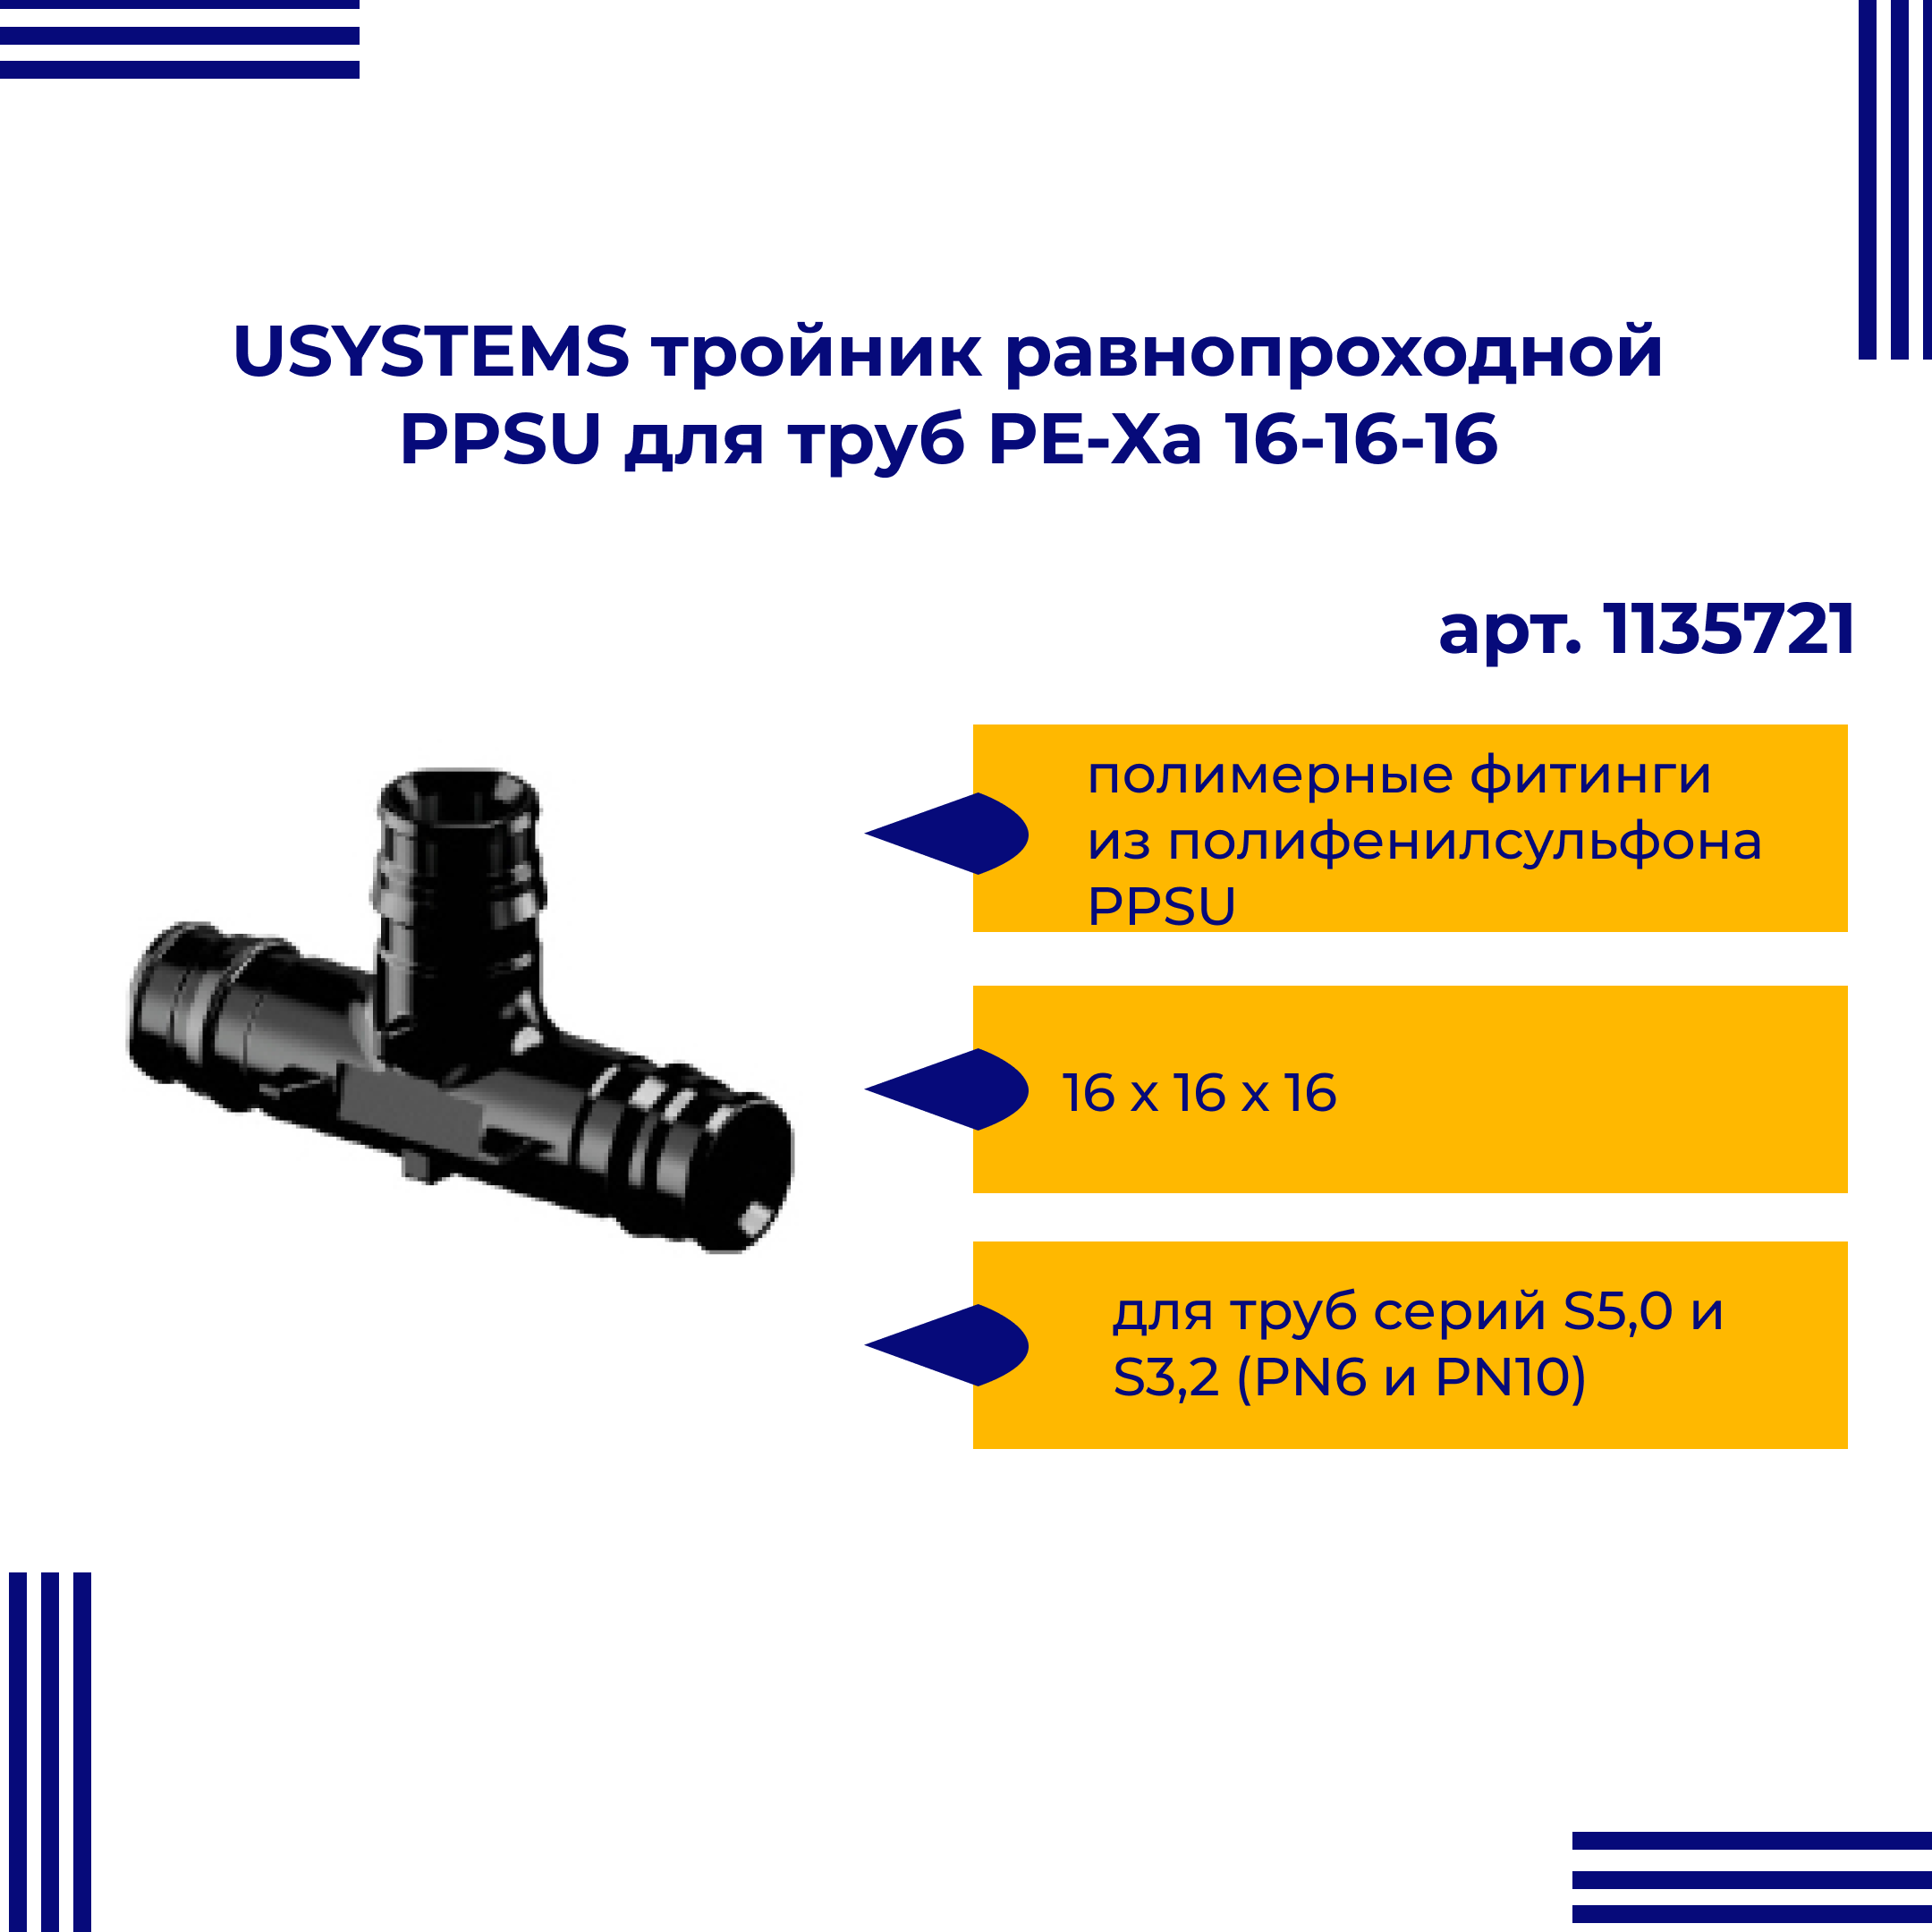 Тройник PPSU USYSTEMS равнопроходной для труб PE-Xa 16-16-16 1135721 тройник viega ввв 1 2 1 2 1 2 бронза rx равнопроходной 264222